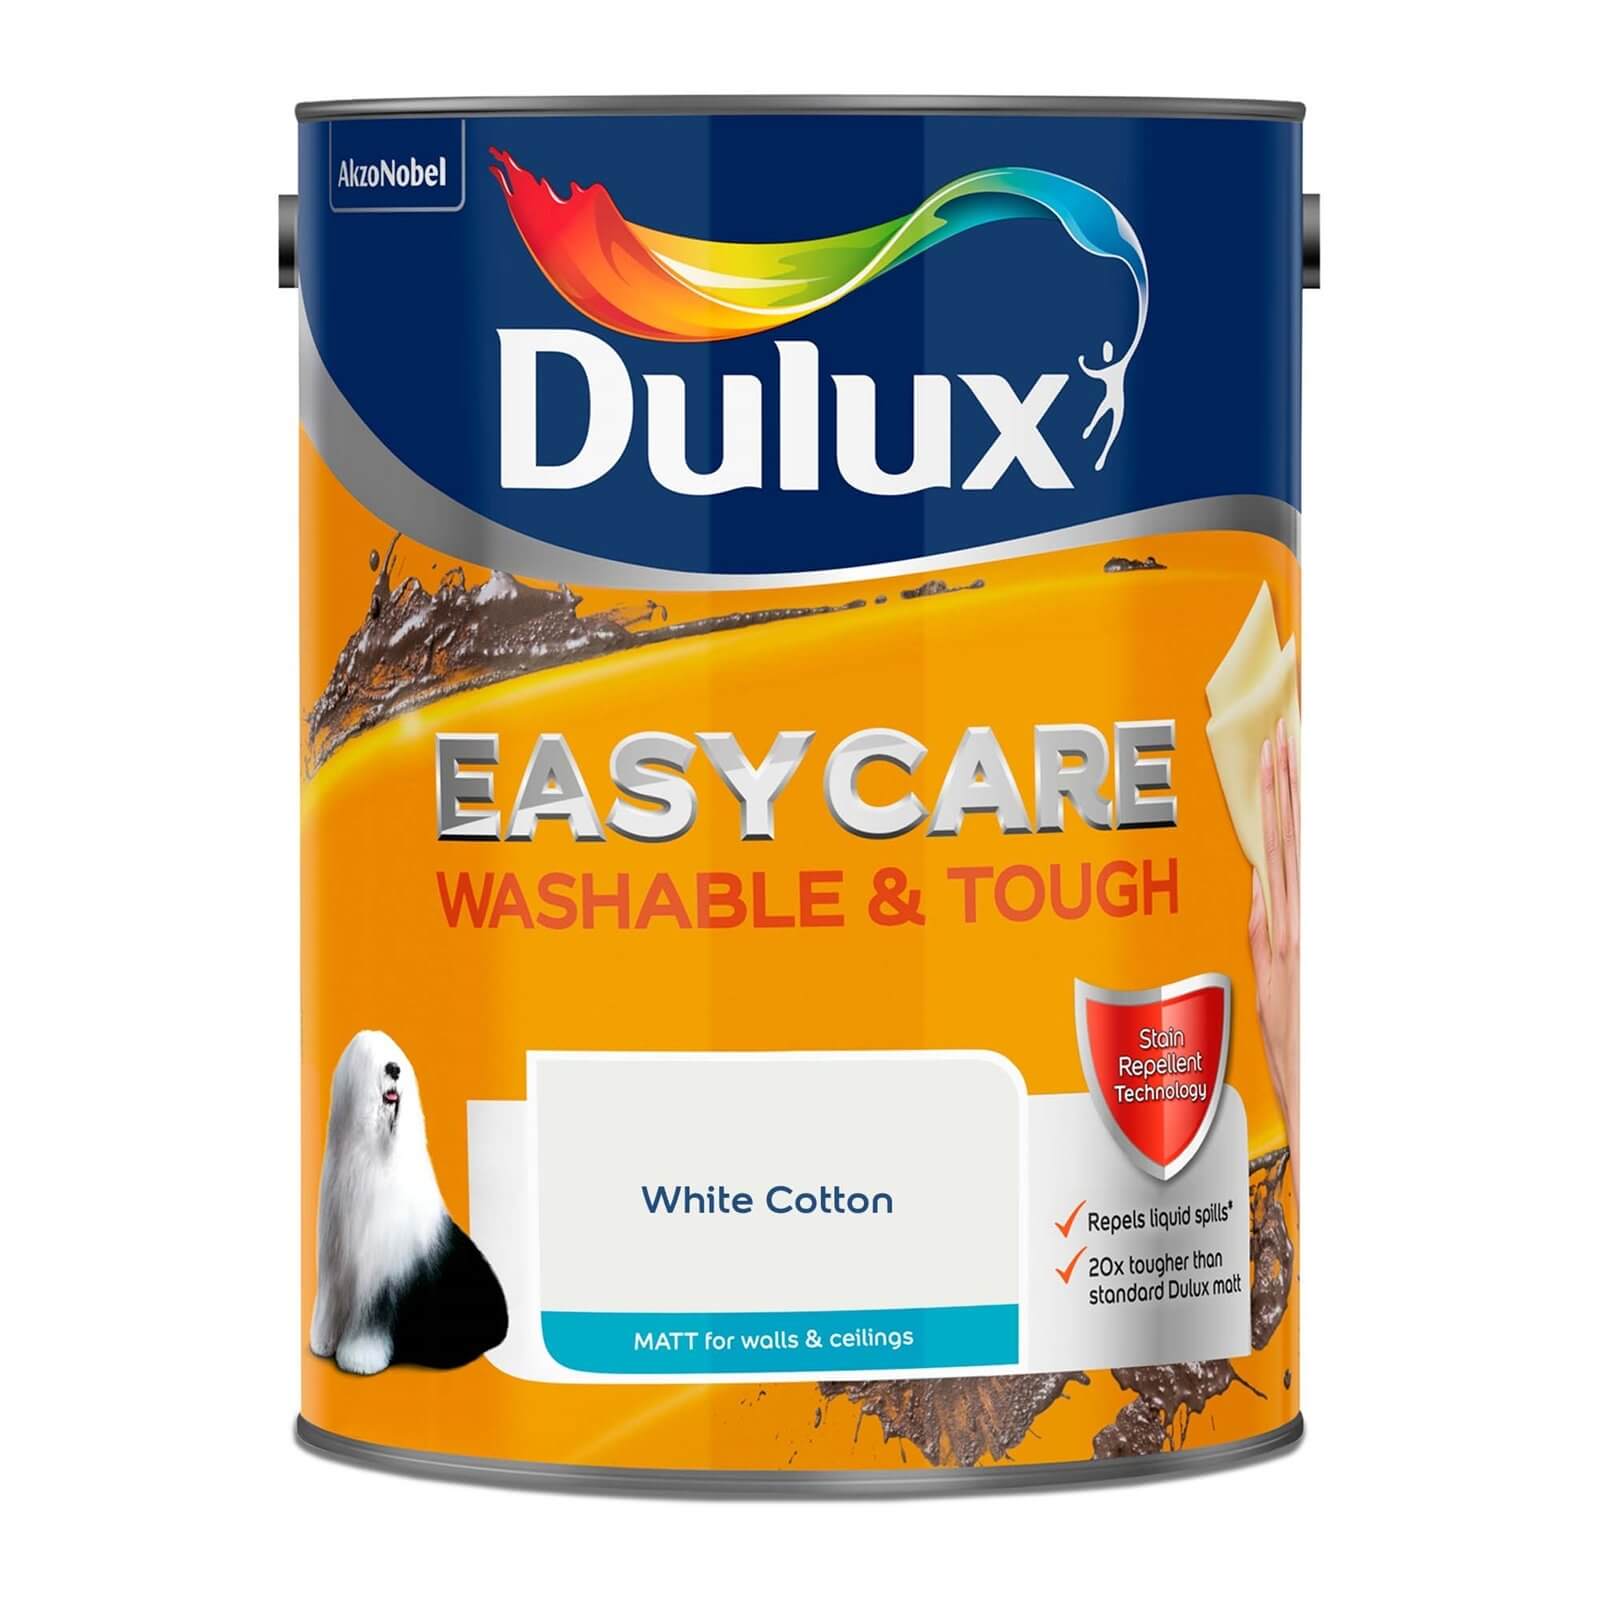 Dulux Easycare Washable & Tough Matt Paint White Cotton - 5L